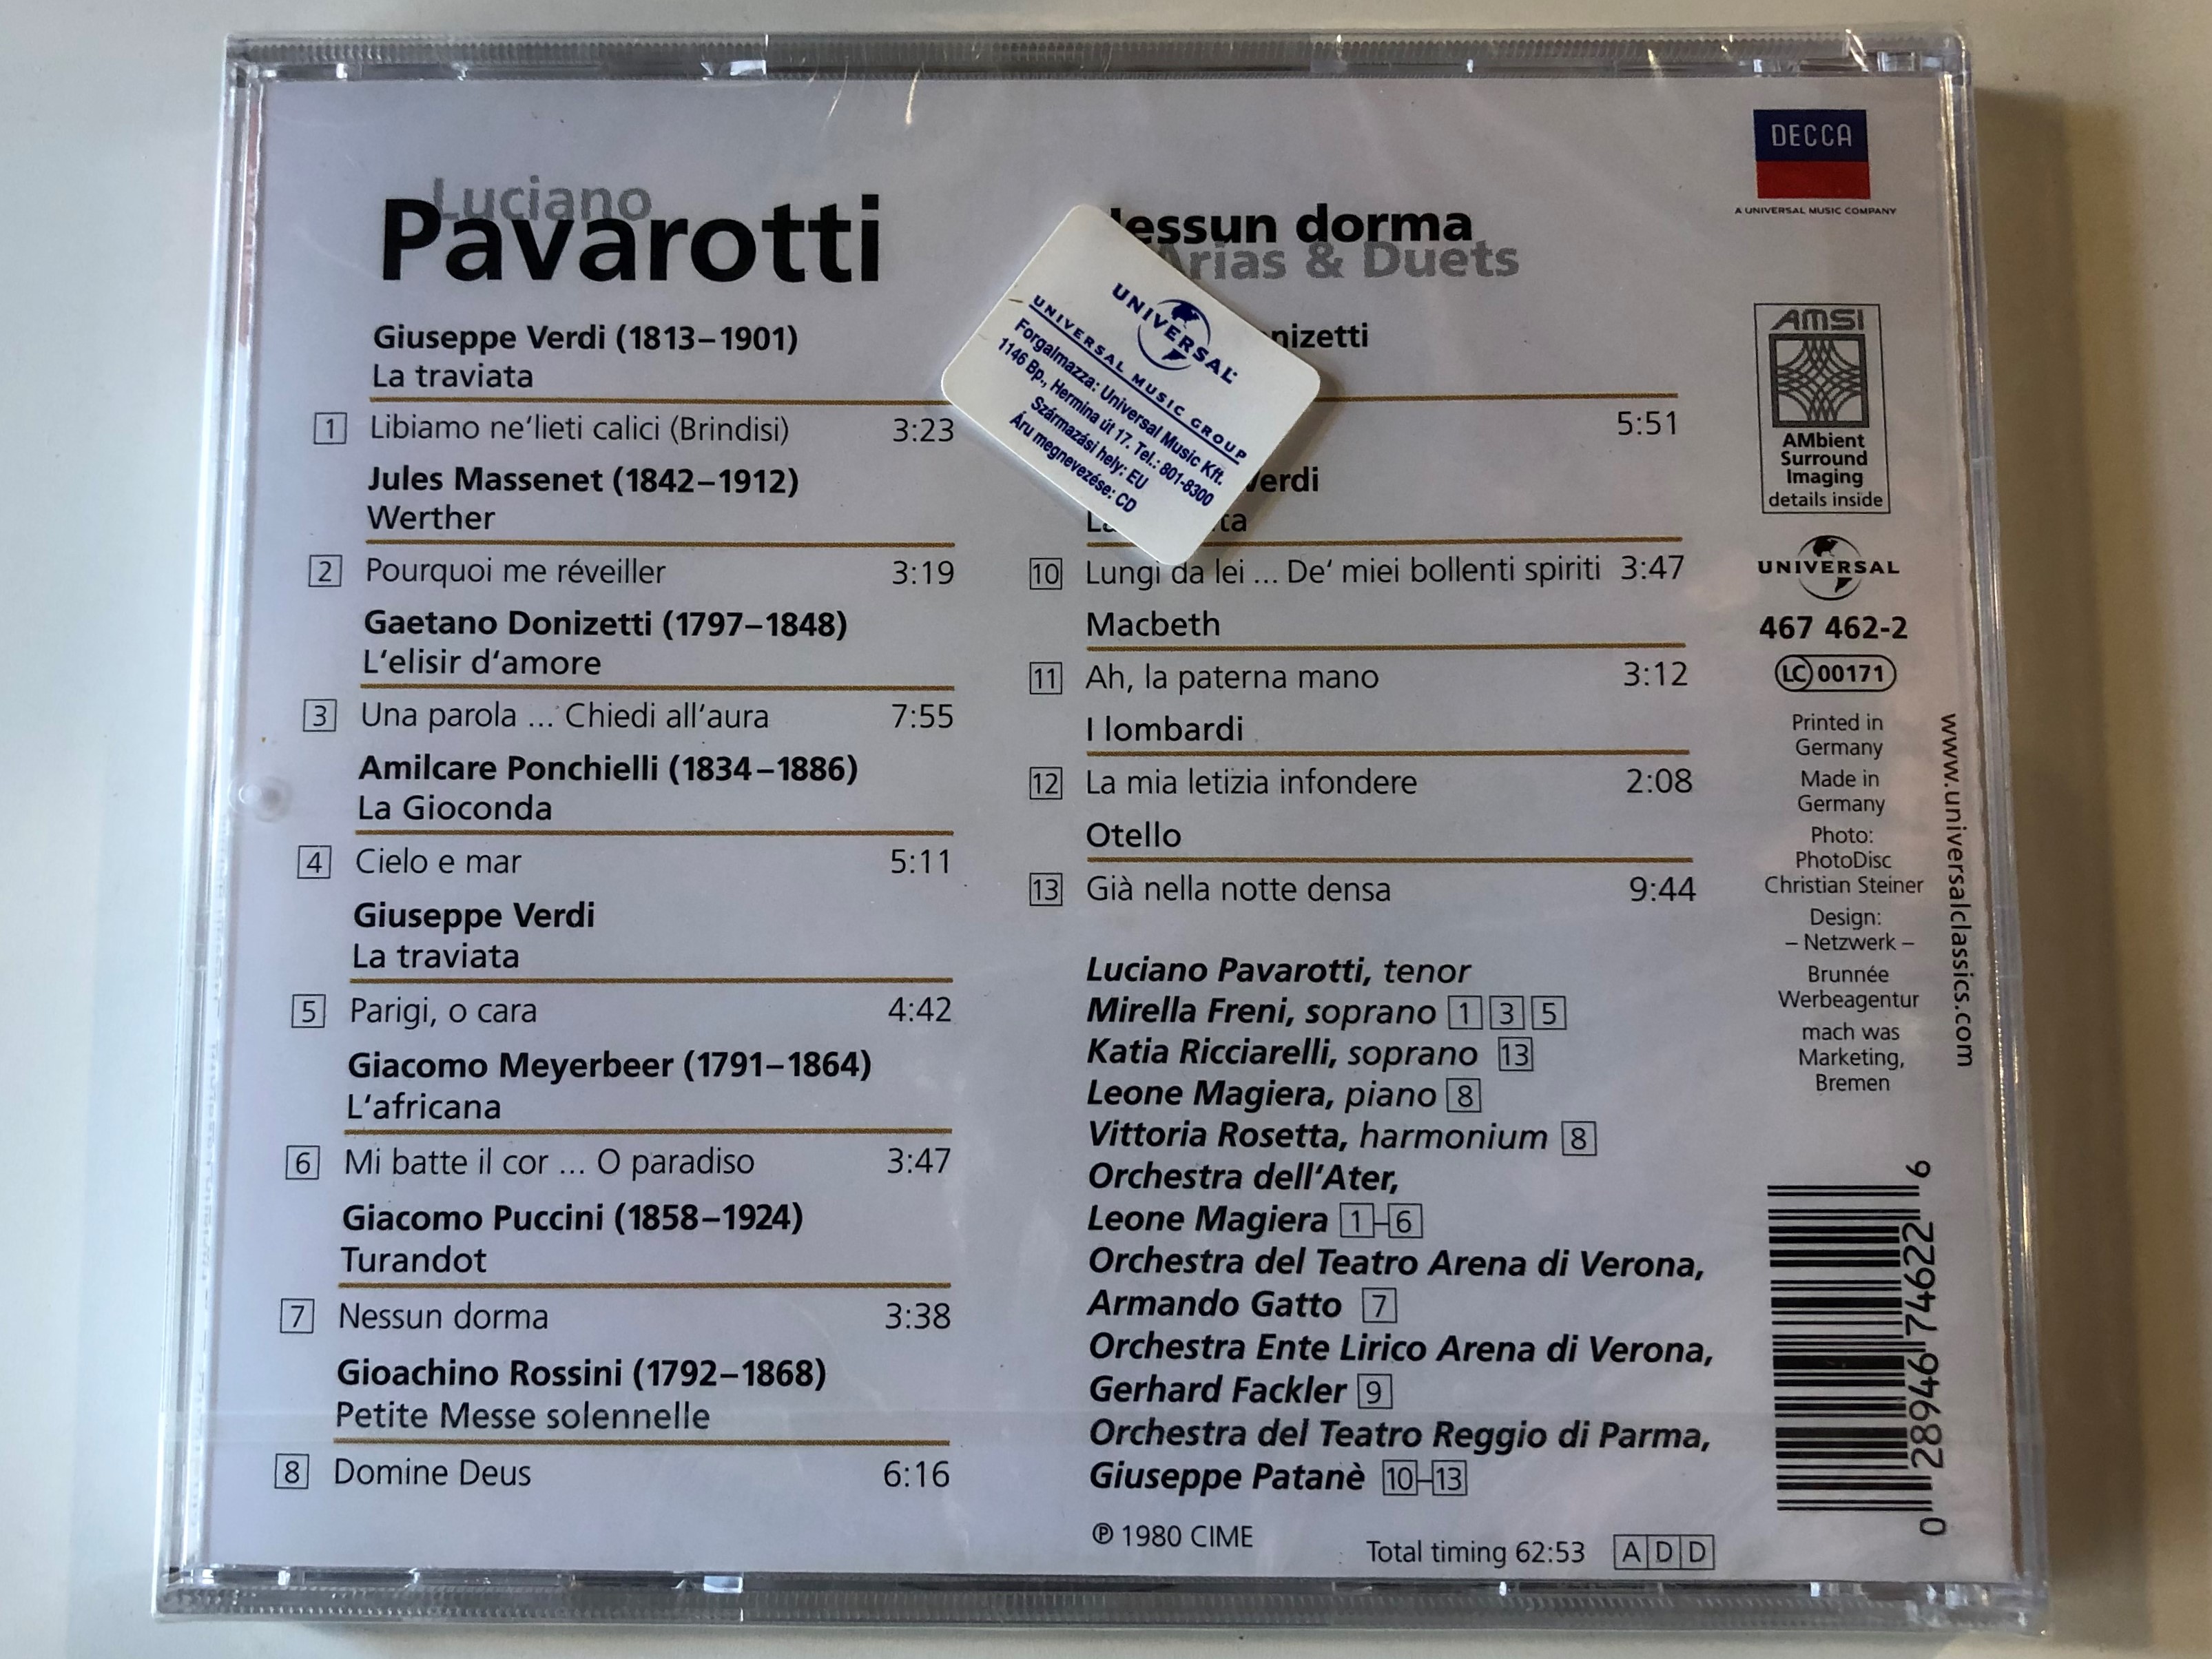 luciano-pavarotti-nessun-dorma-arias-duets-freni-ricciarelli-orchestra-ente-lirico-arena-di-verona-orchestra-del-teatro-reggio-di-parma-magiera-patane-eloquence-decca-audio-cd-.jpg